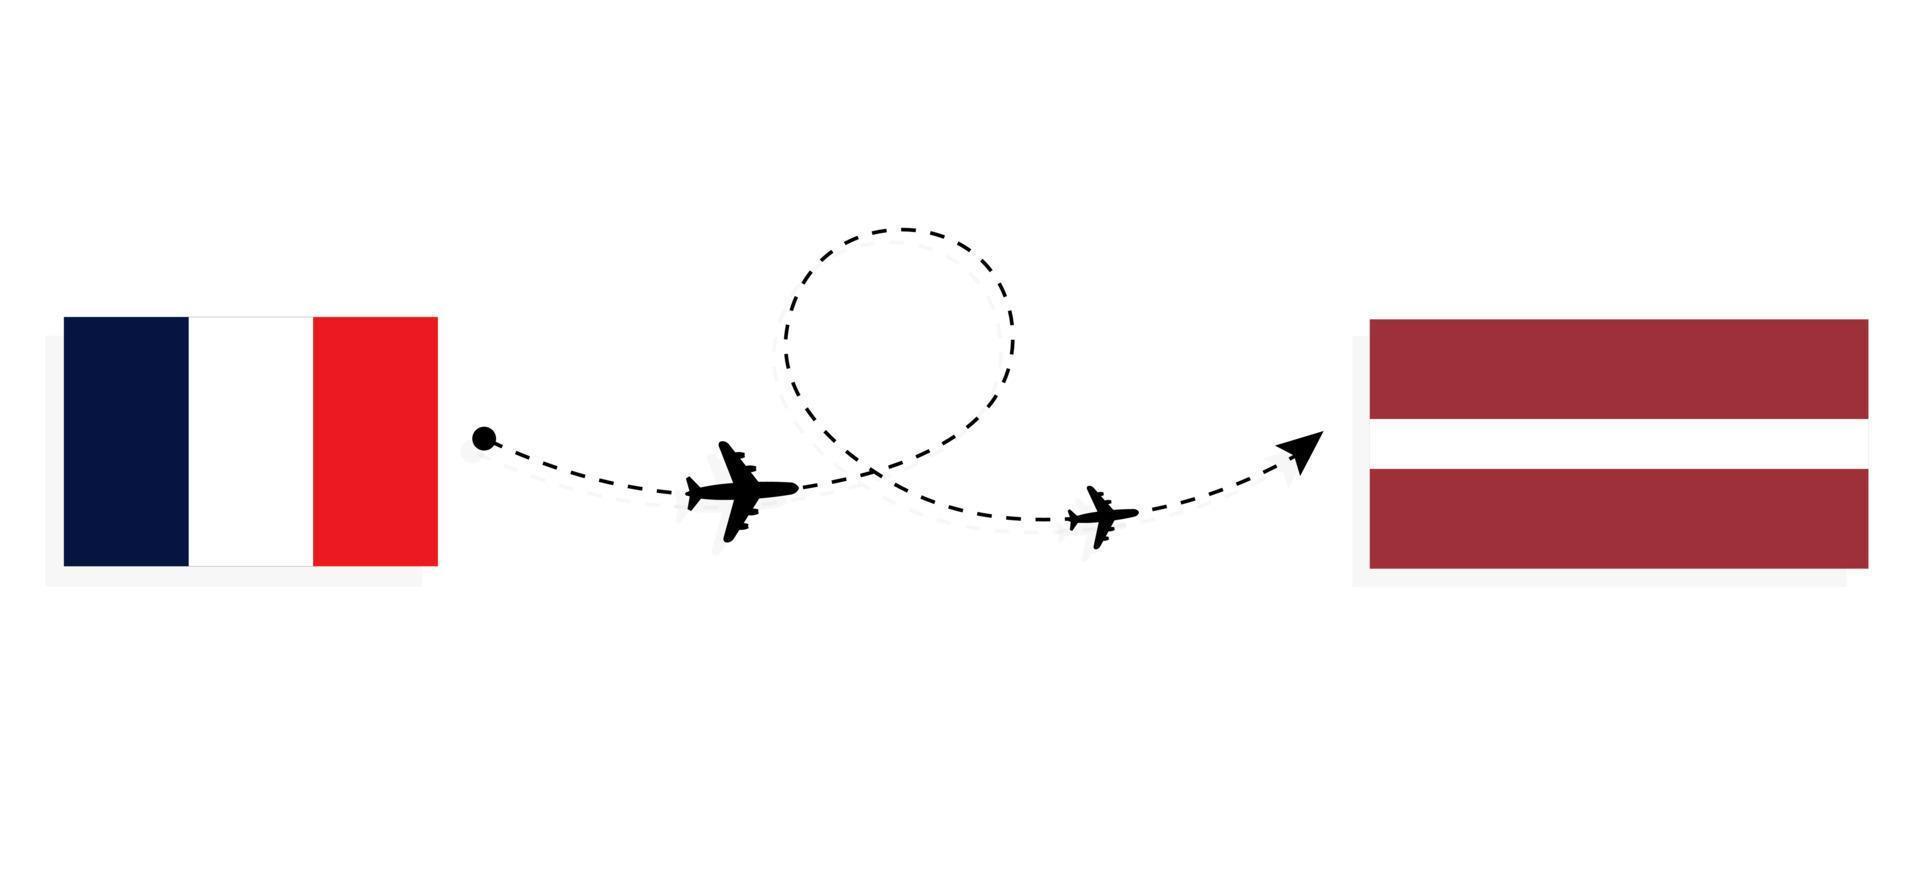 flyg och resor från Frankrike till Lettland med passagerarflygplan vektor